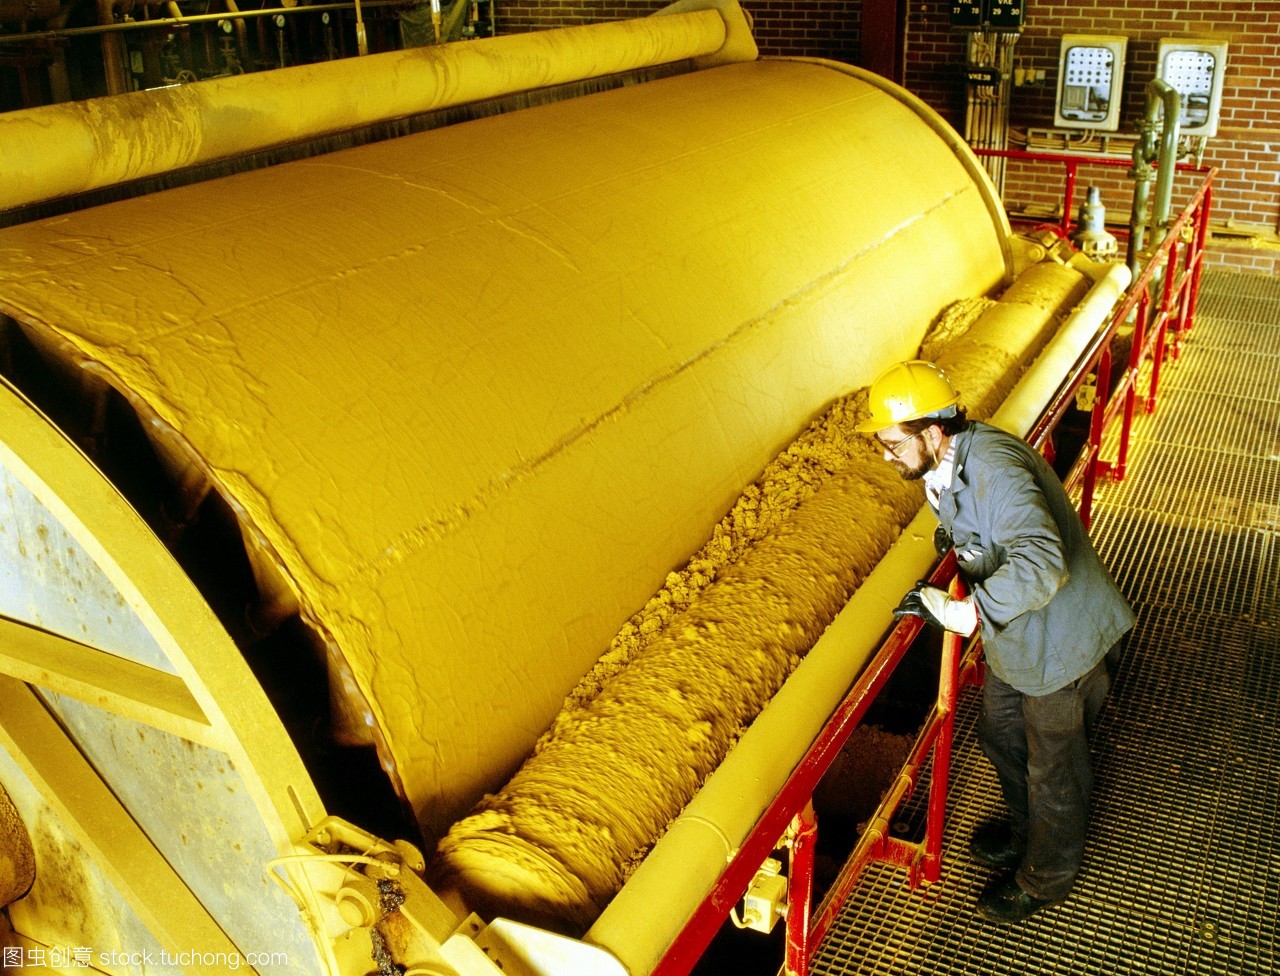 模型发布。涂料制造。技术人员观察用于制造黄色颜料的机器。颜料的颜色来自于它里面的氧化铁。